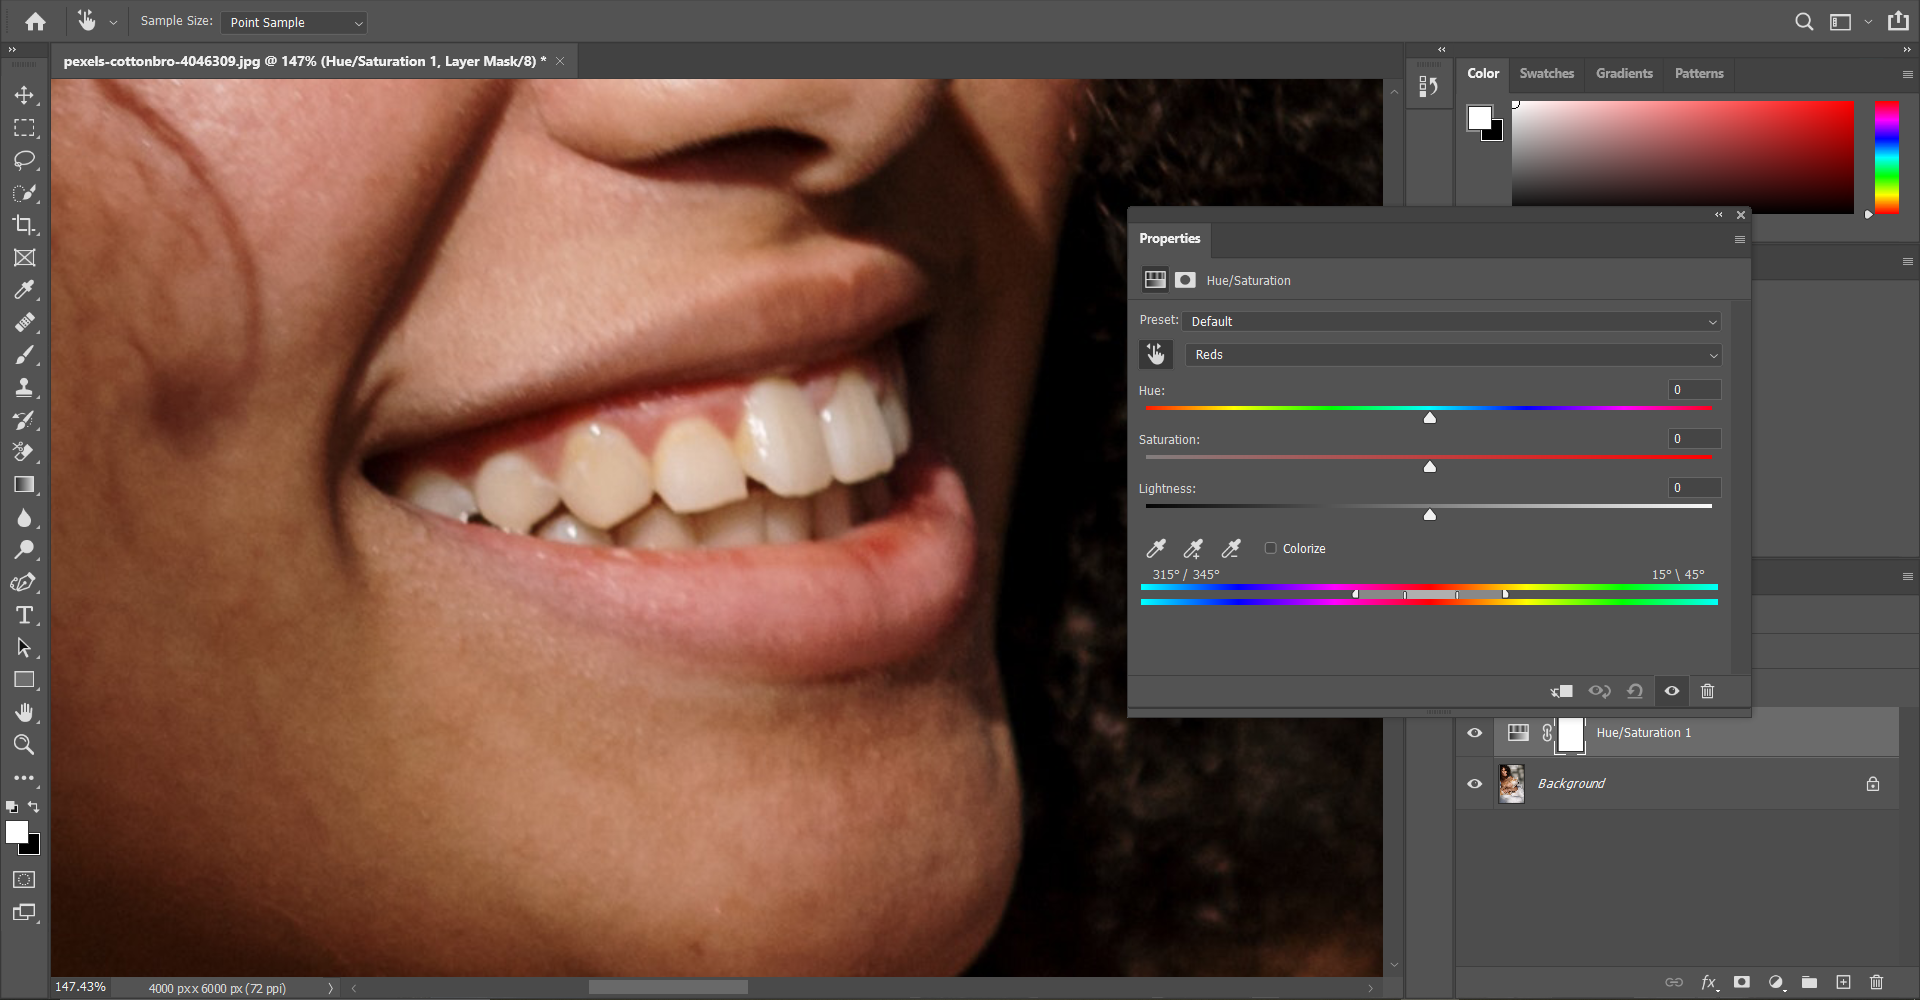 06 Color picking yellow teeth - 4 macchie che puoi rimuovere facilmente usando Photoshop